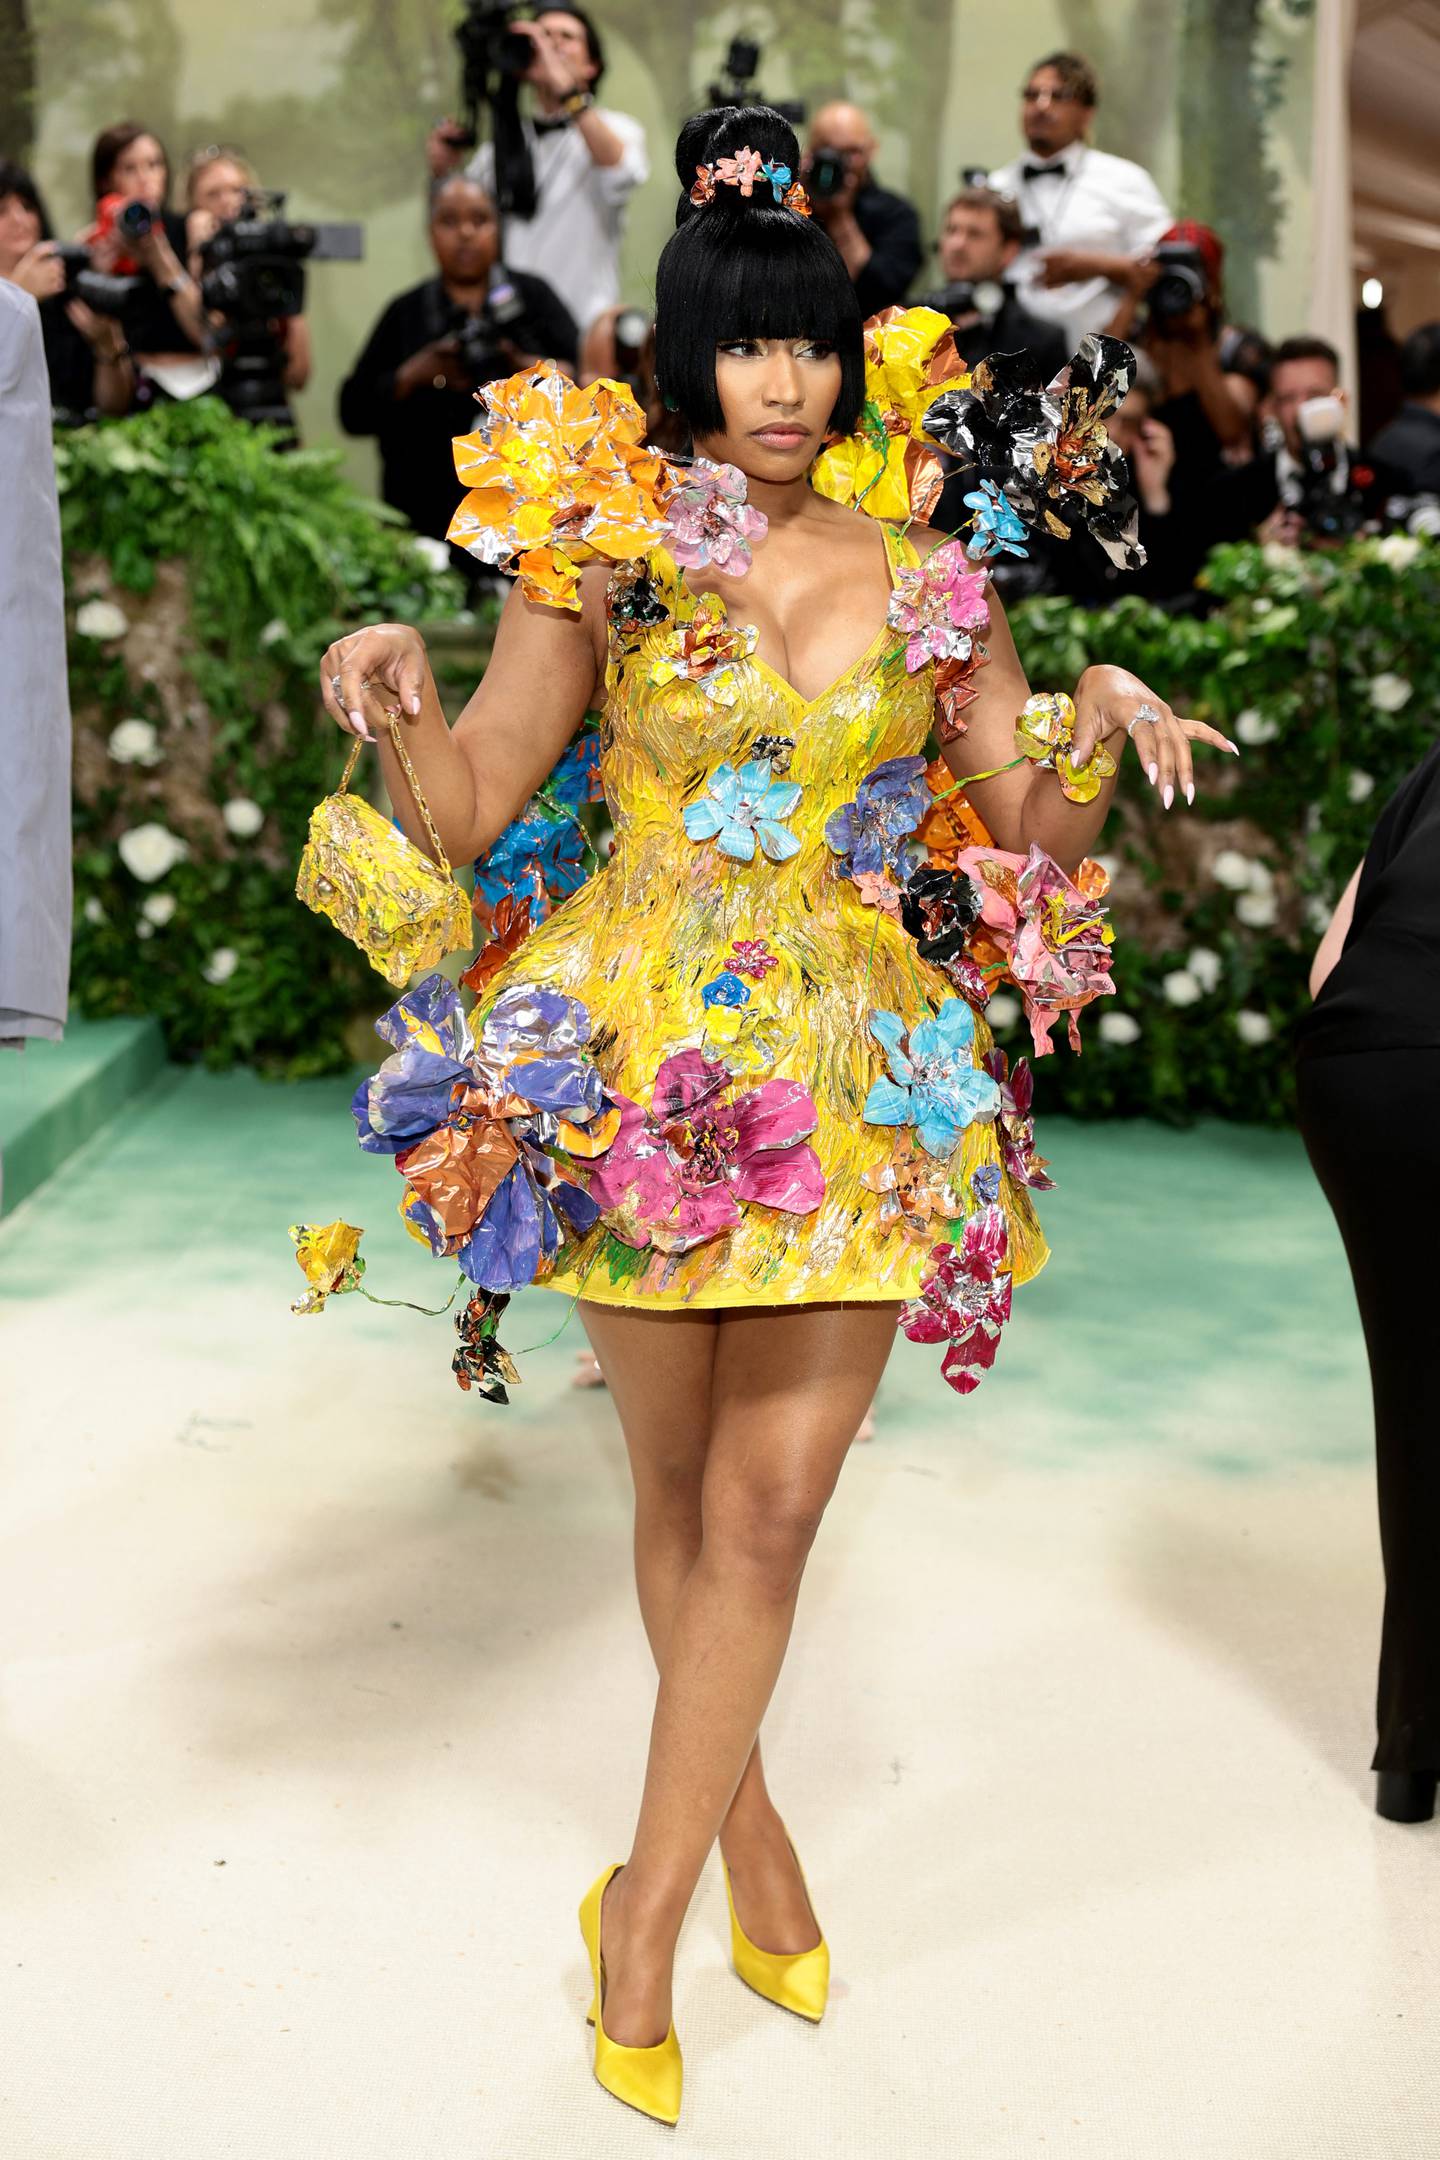 La cantante y rapera estadounidense, Nicki Minaj, fue elogiada en redes por utilizar un vestido amarillo cubierto de flores metálicas en 3D. Vogue describió su atuendo como una "escultura floral".